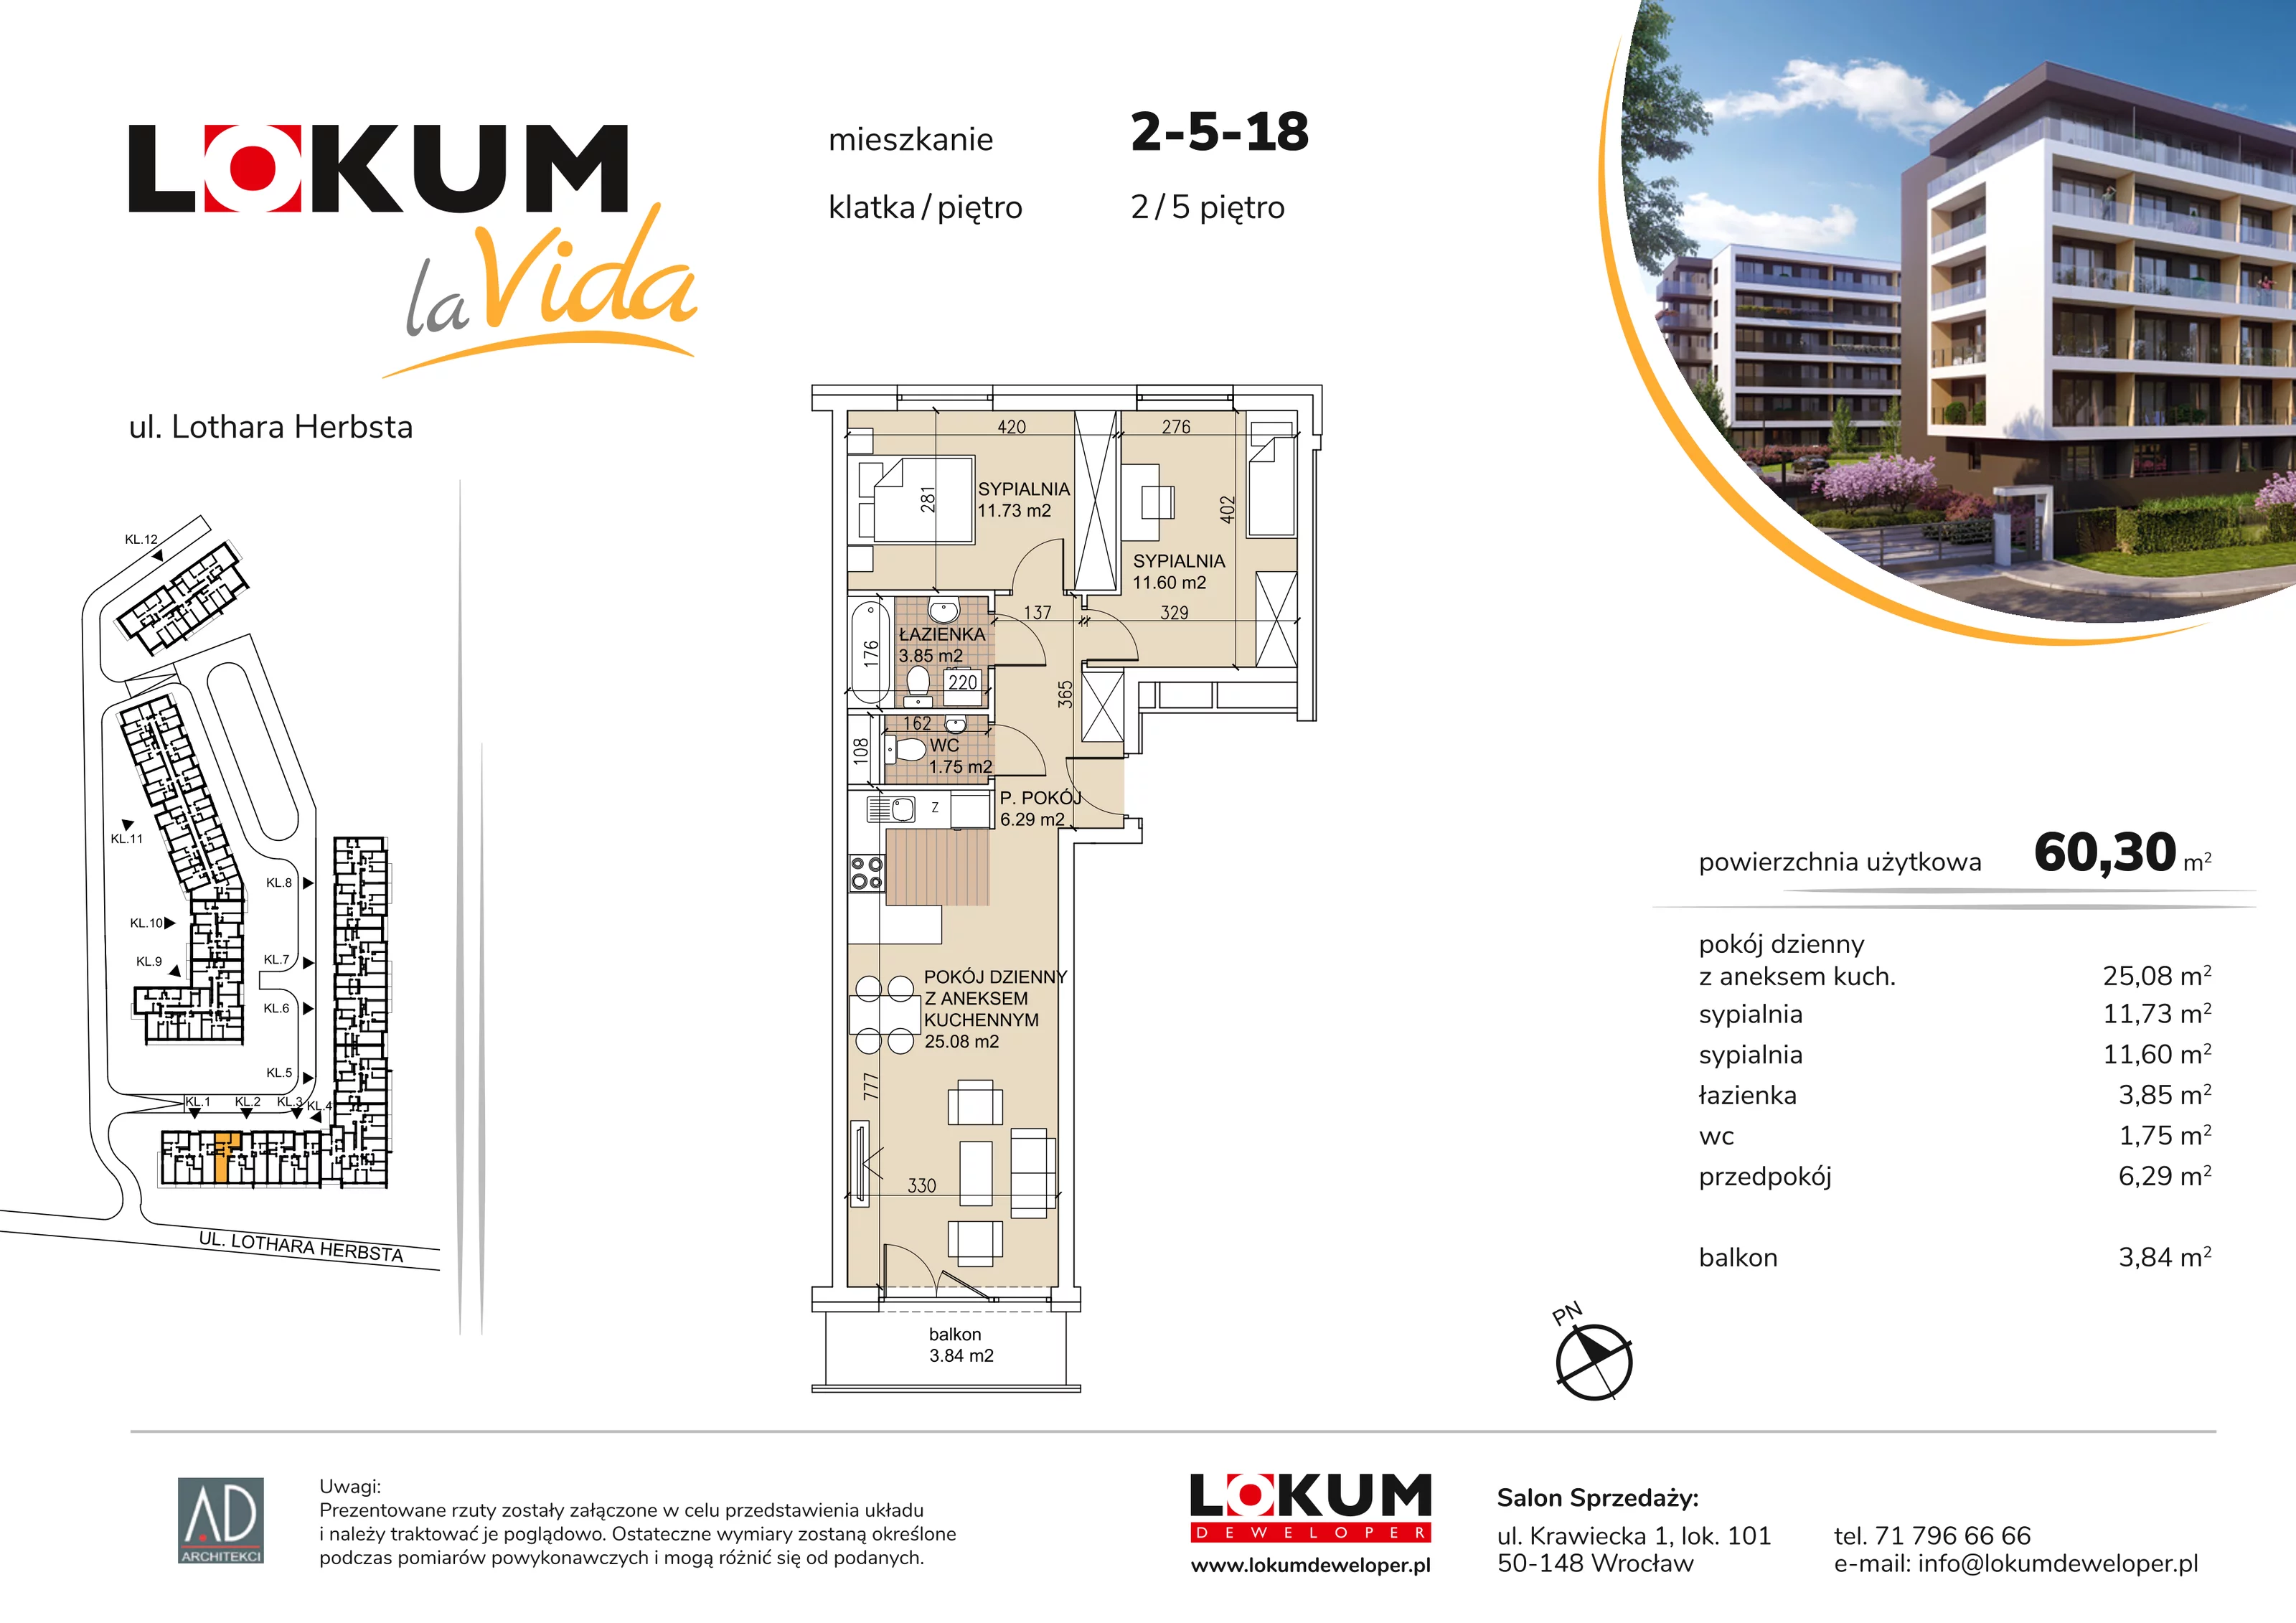 Mieszkanie 60,30 m², piętro 5, oferta nr 2-5-18, Lokum la Vida, Wrocław, Sołtysowice, ul. Lothara Herbsta